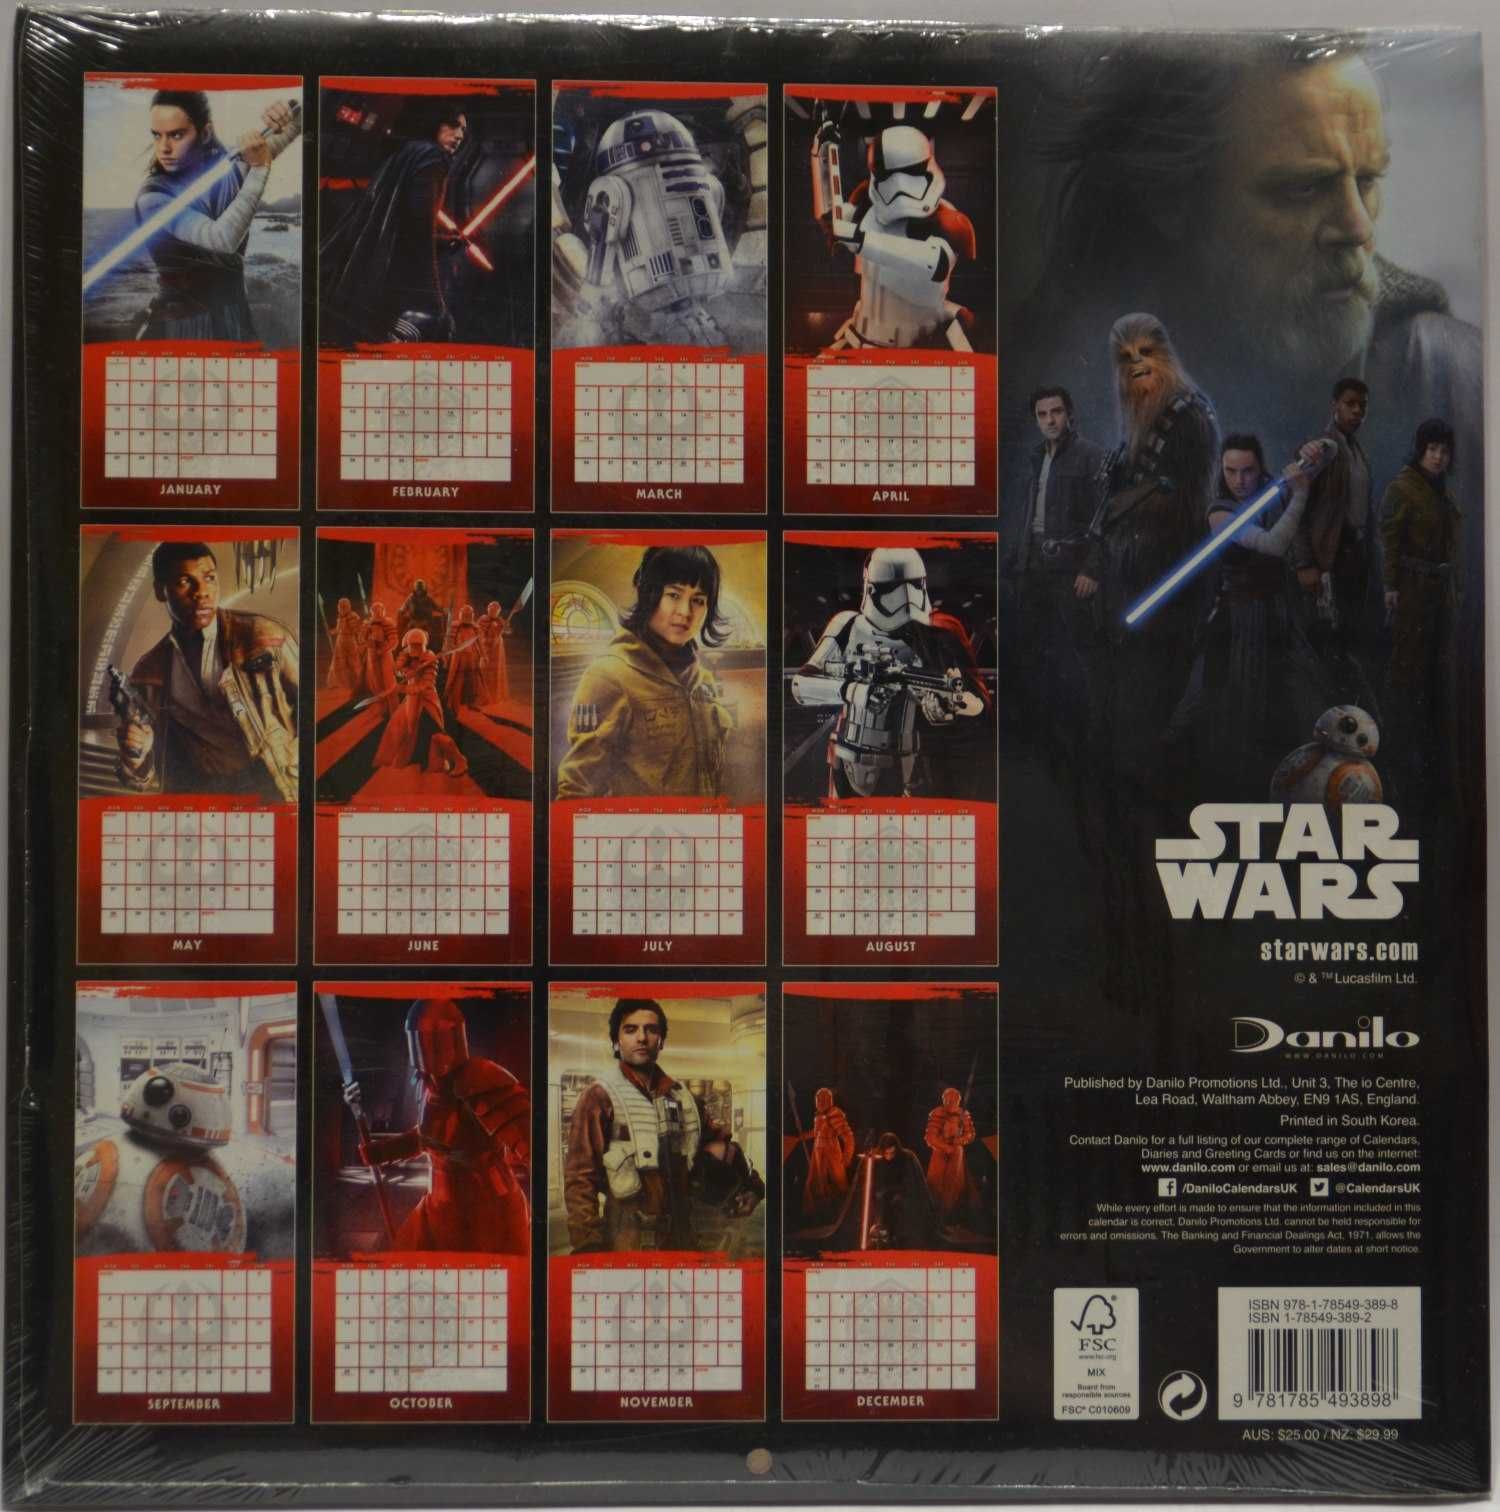 Star Wars The Last Jedi - Oficjalny Kalendarz 2018